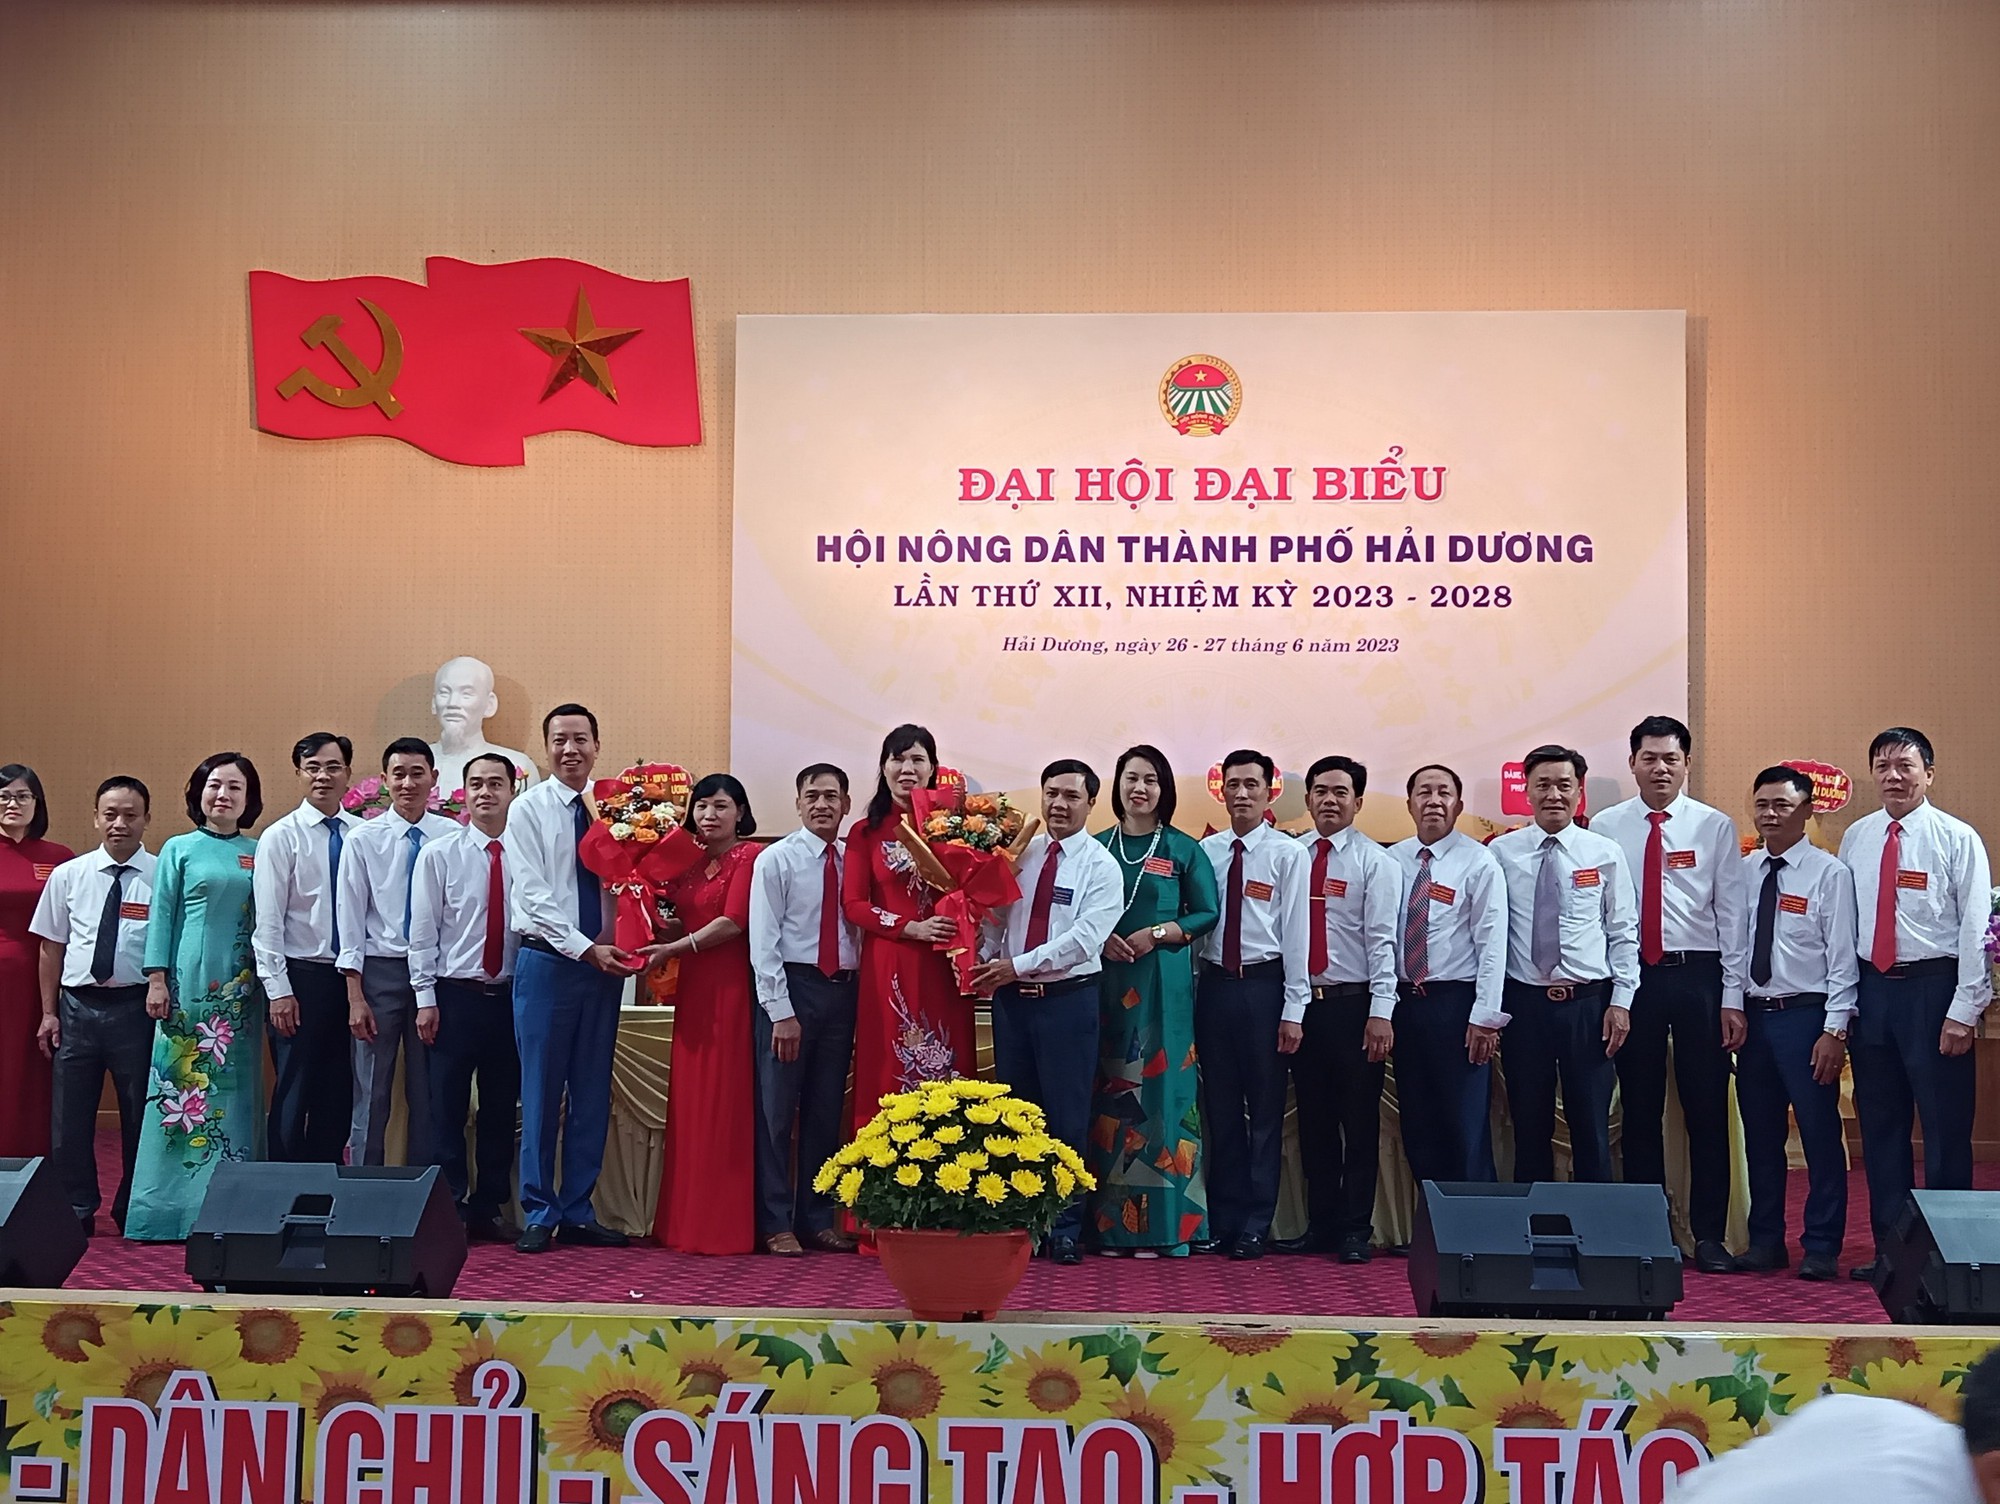 Đại hội Đại biểu Hội nông dân TP Hải Dương, bà Nguyễn Hải Yến tái đắc cử chức Chủ tịch - Ảnh 2.